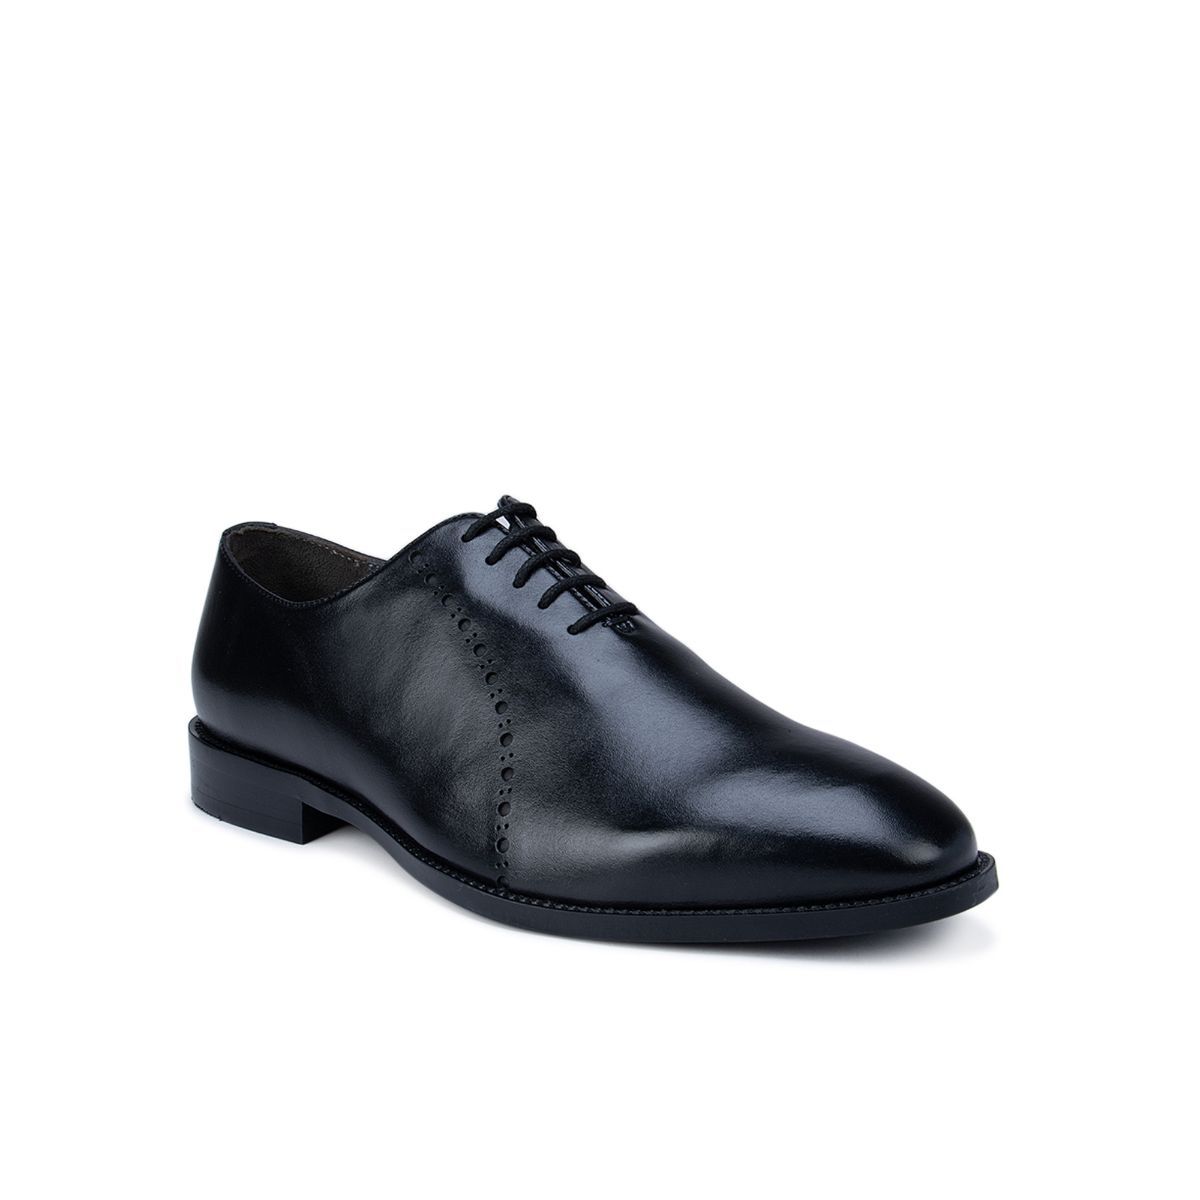 Rosso Brunello Black Leather Oxford Shoes: Buy Rosso Brunello Black ...